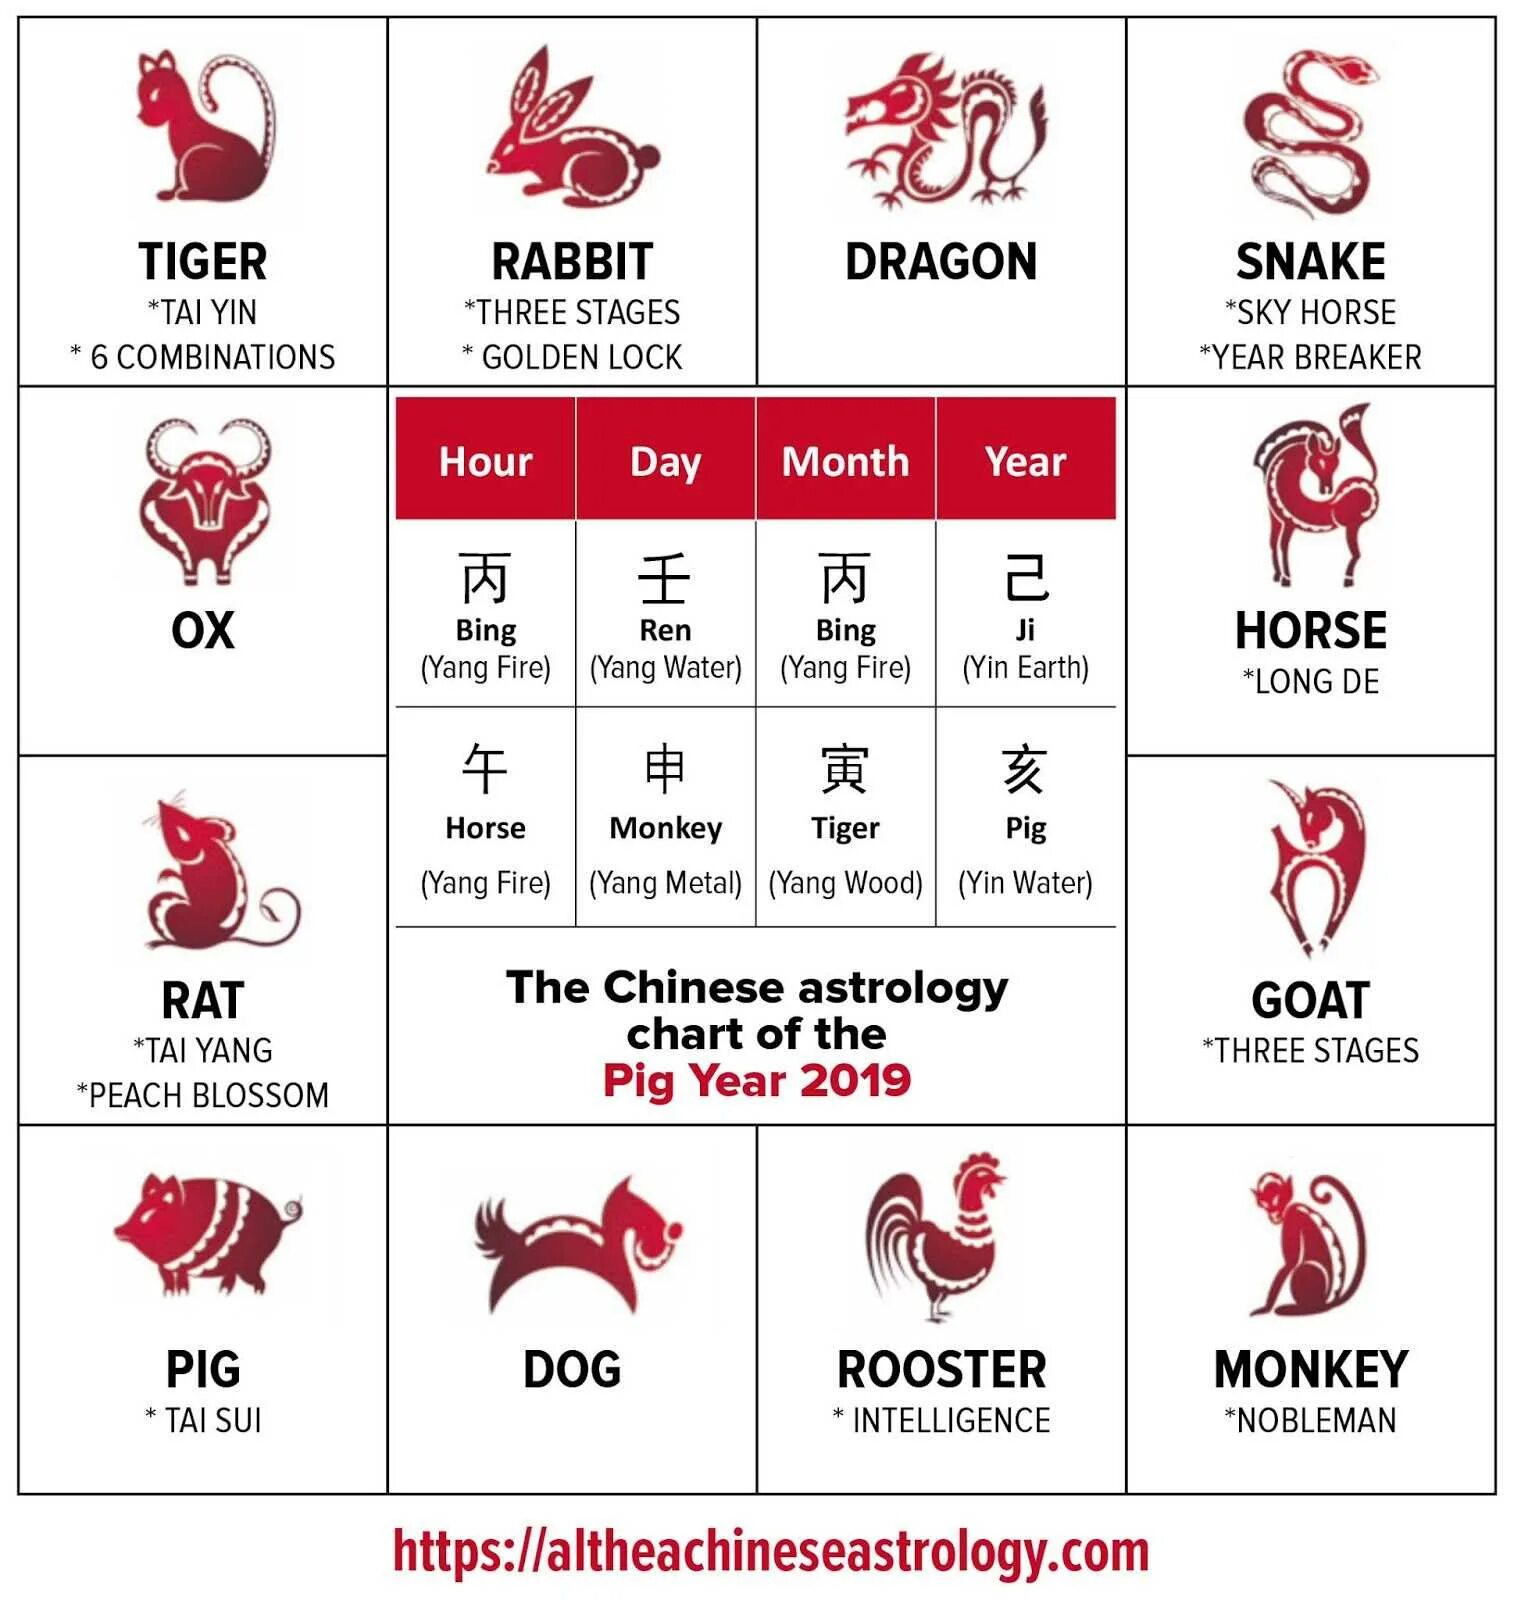 Китайский гороскоп. Знаки зодиака китайский гороскоп. Китайский гороскоп 2019. Китайский гороскоп по годам.